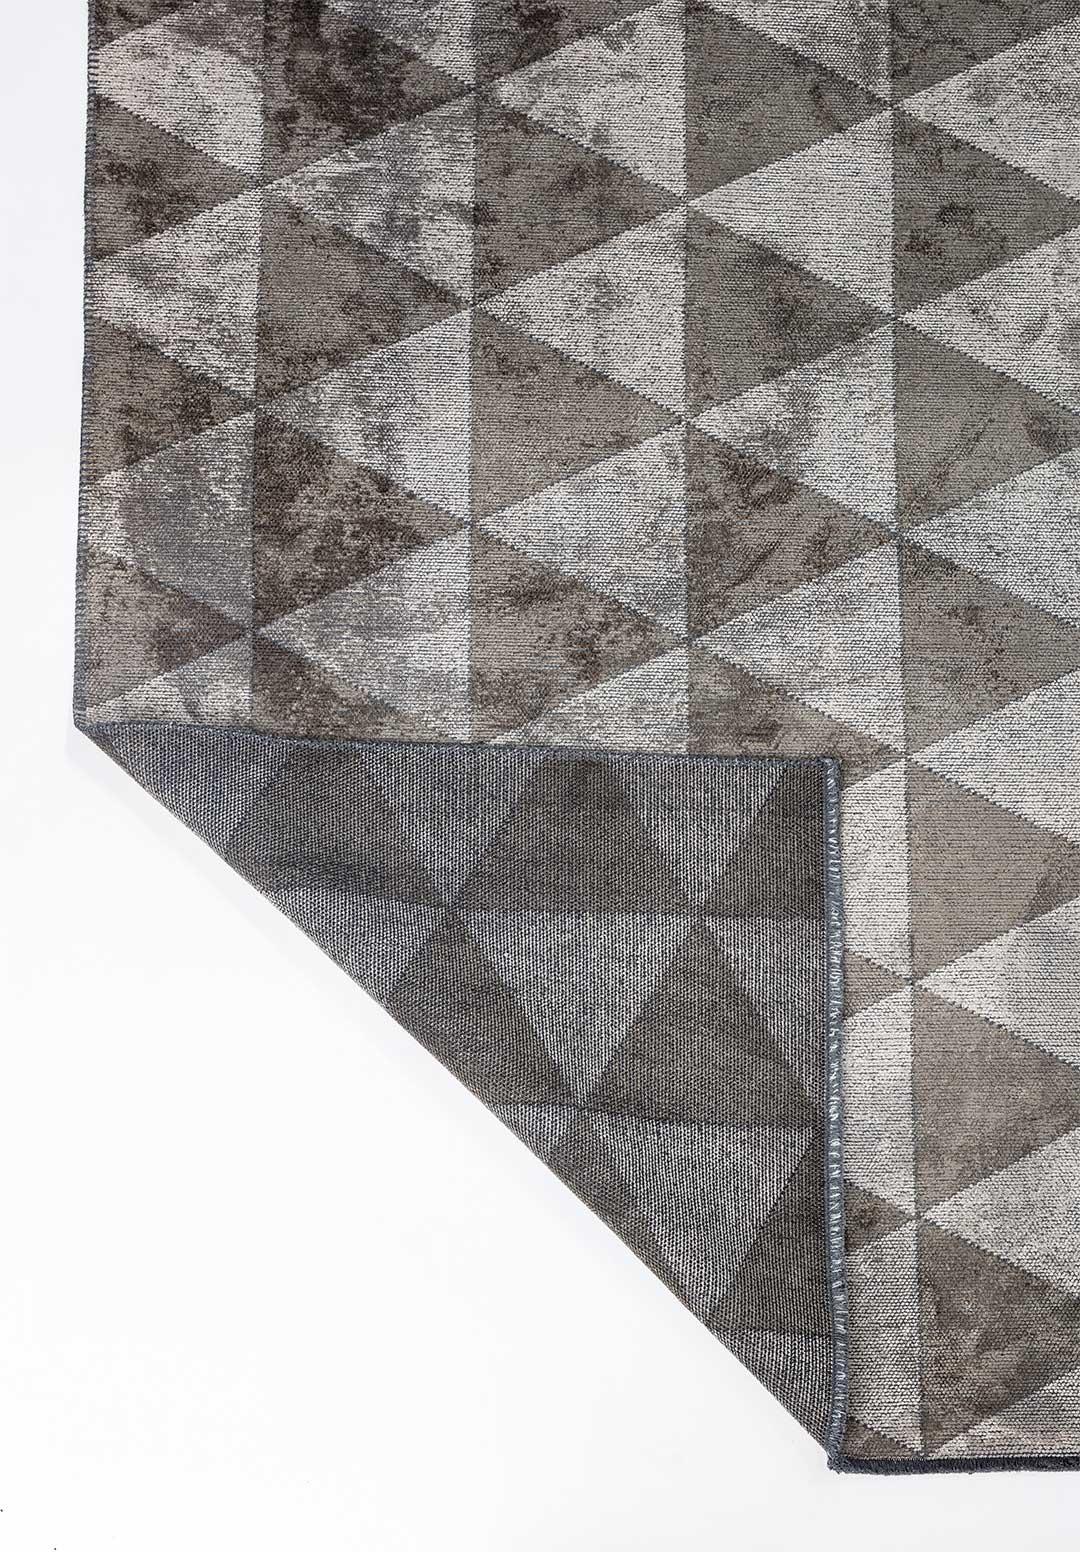 Die Rapture Collection ist eine hochwertige Teppichkollektion, die 29 Teppichdesigns in 155 Design- und Farbkombinationen umfasst, insgesamt 620 verschiedene Design-Farb-Größen-Kombinationen. Die Teppiche eignen sich gut für den Einsatz in